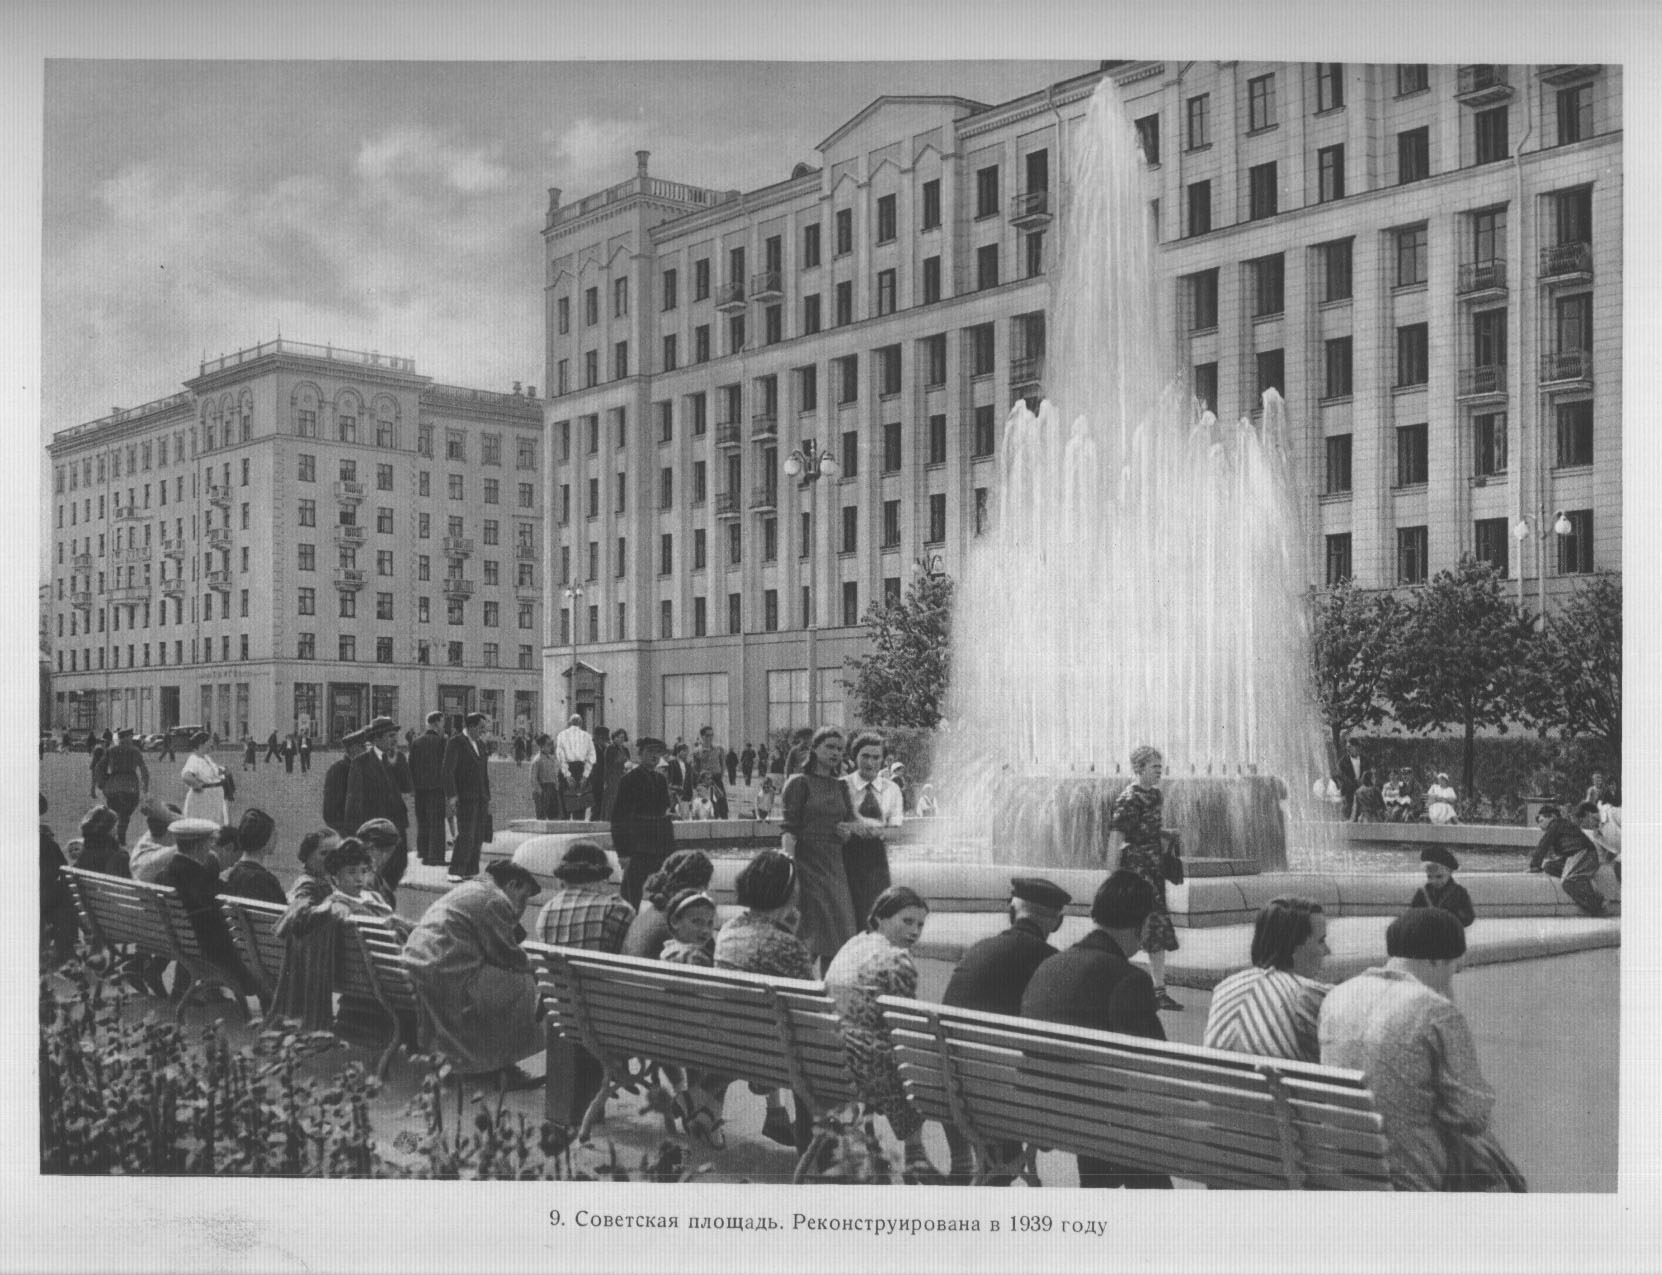 9. Советская площадь. Реконструирована в 1939 году